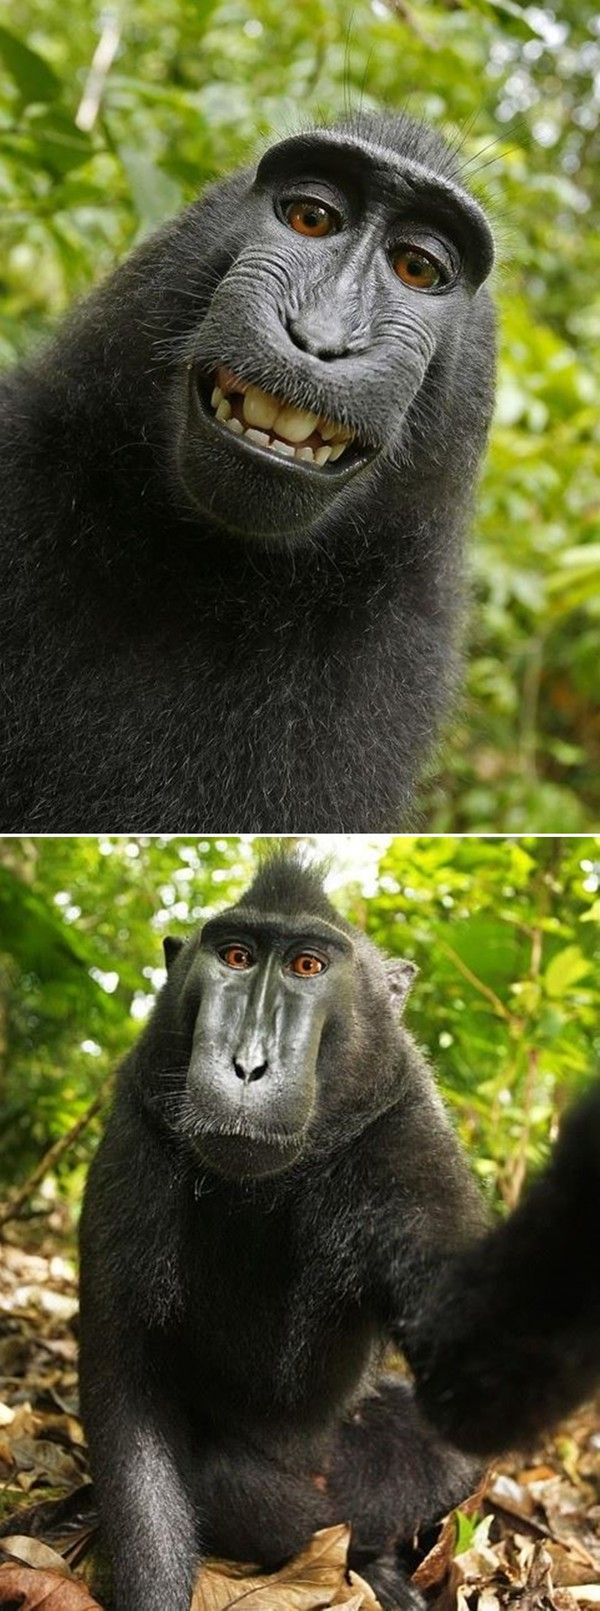 한편 이와 비슷한 일이 지난 2011년 발생했는데, 당시 원숭이가 찍은 사진의 저작권은 누구에게 있냐며 논란이 된 바 있다. / 출처 온라인 커뮤니티